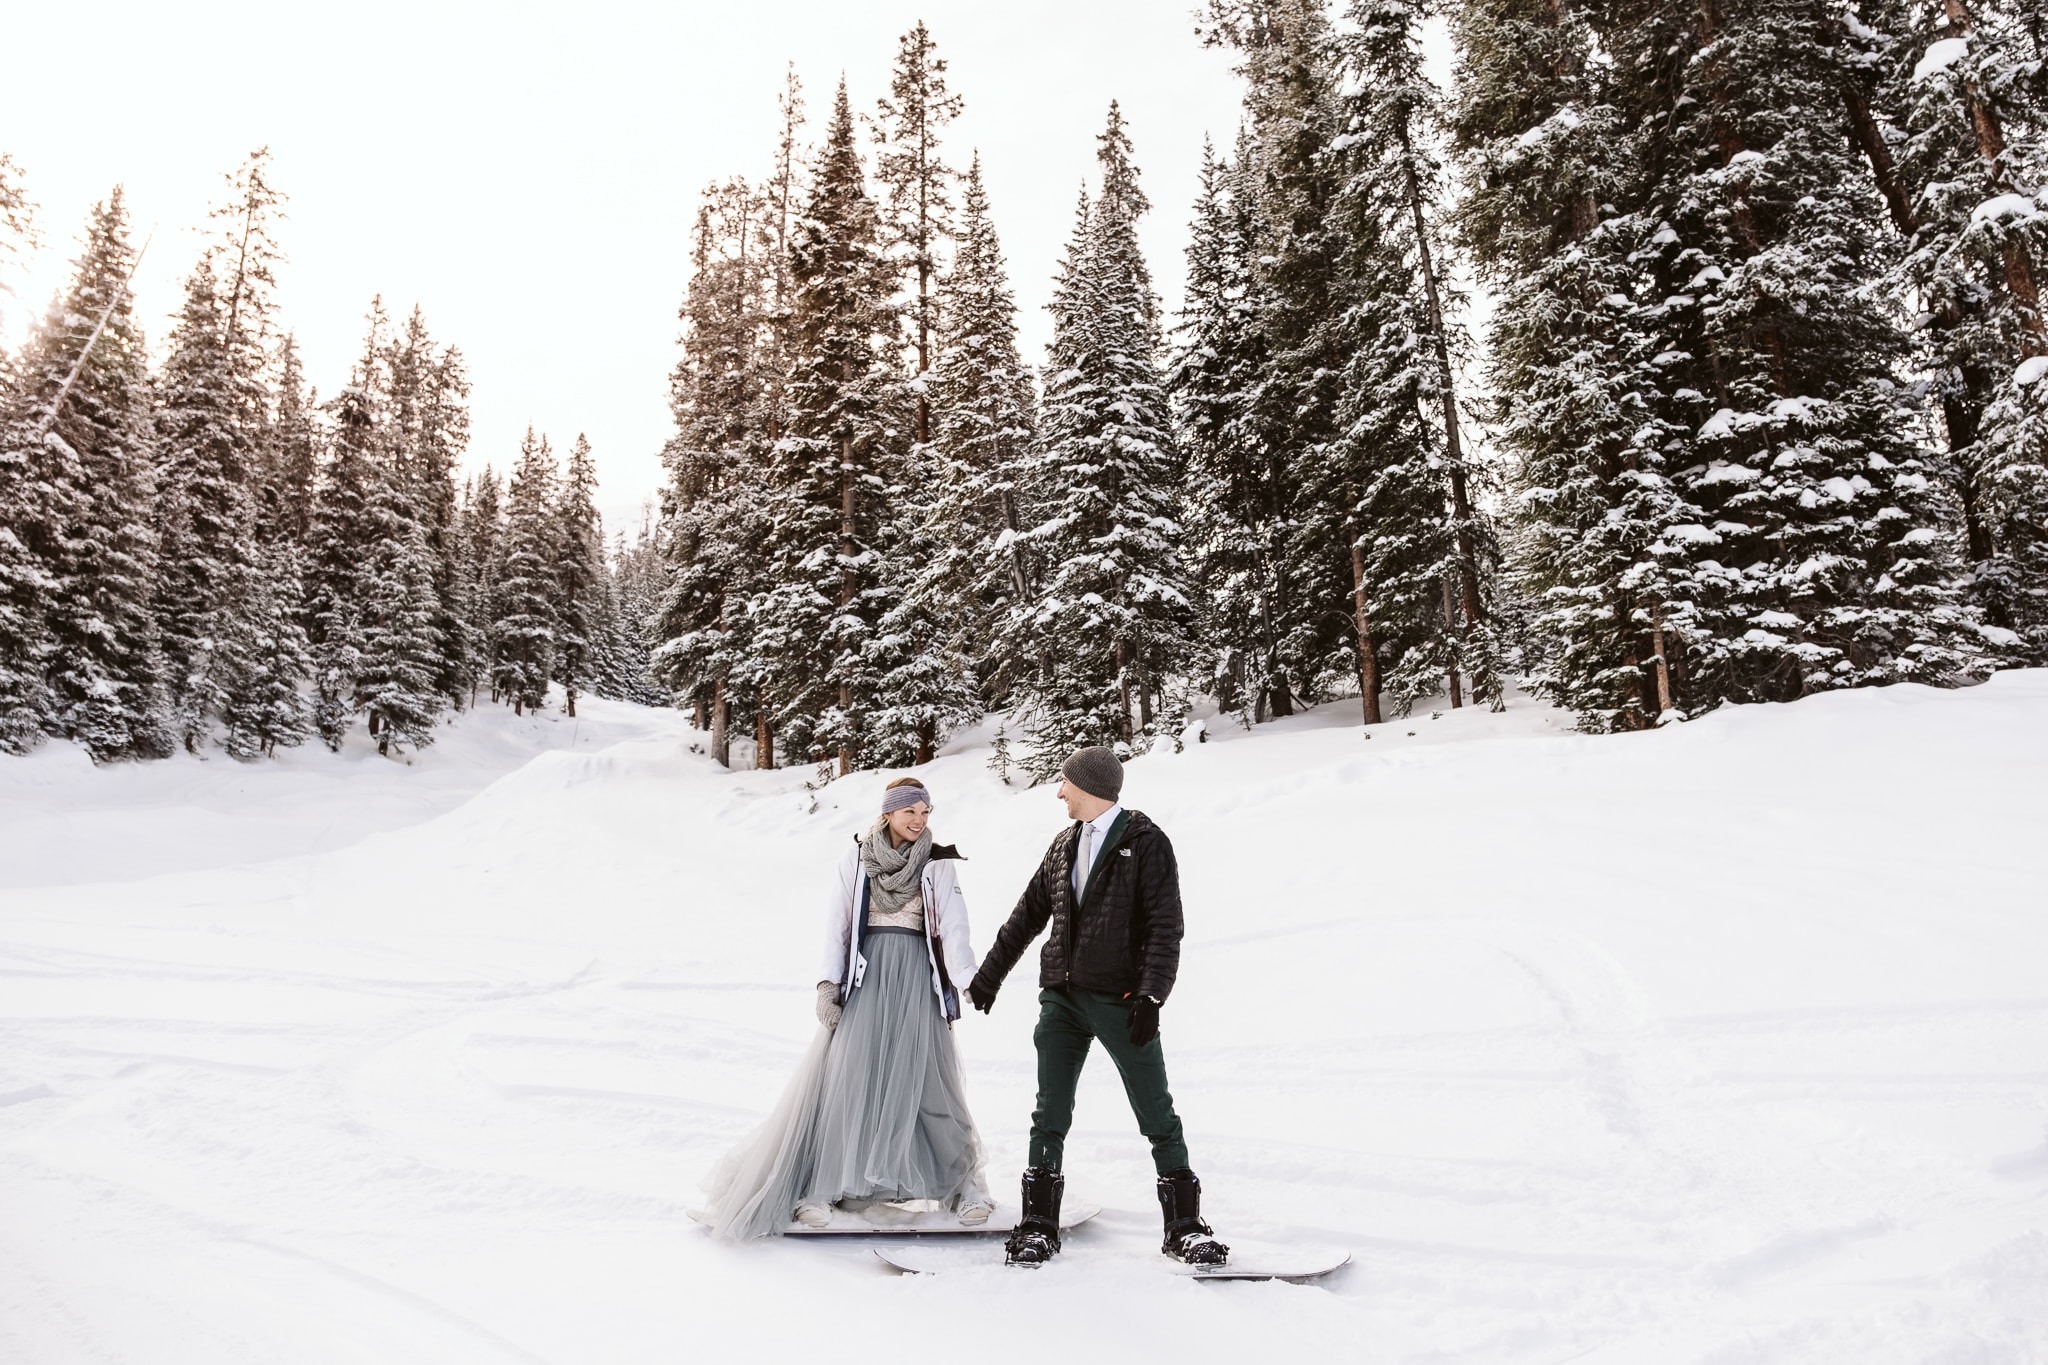 Snowboarding elopement in Colorado